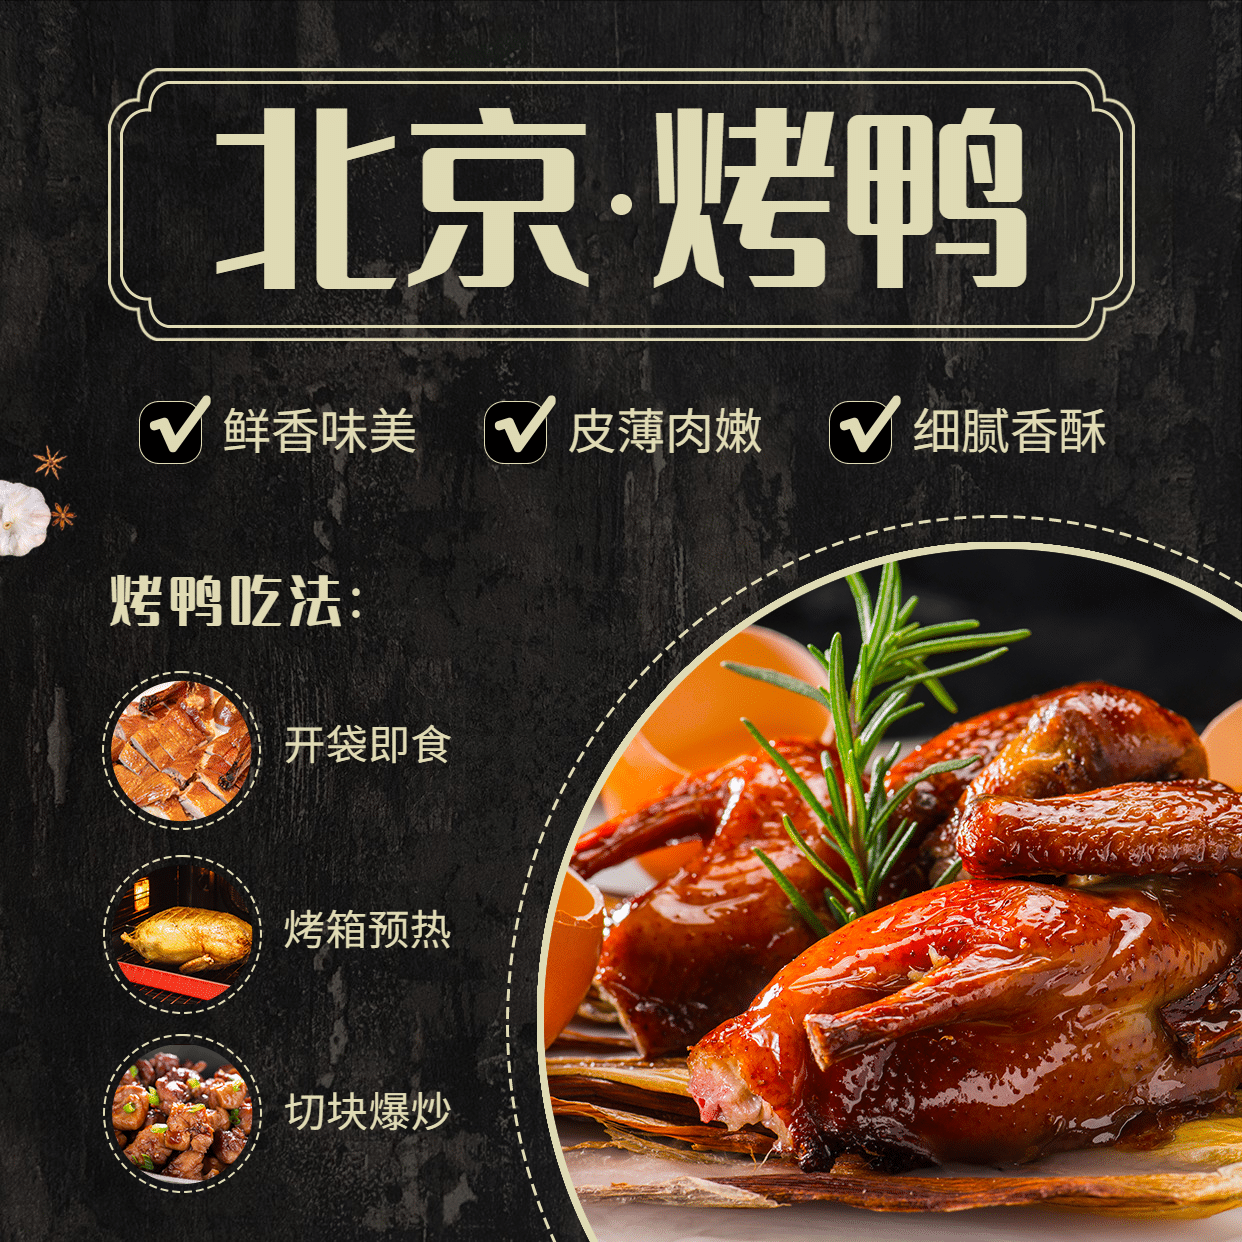 北京烤鸭产品展示介绍方形海报预览效果